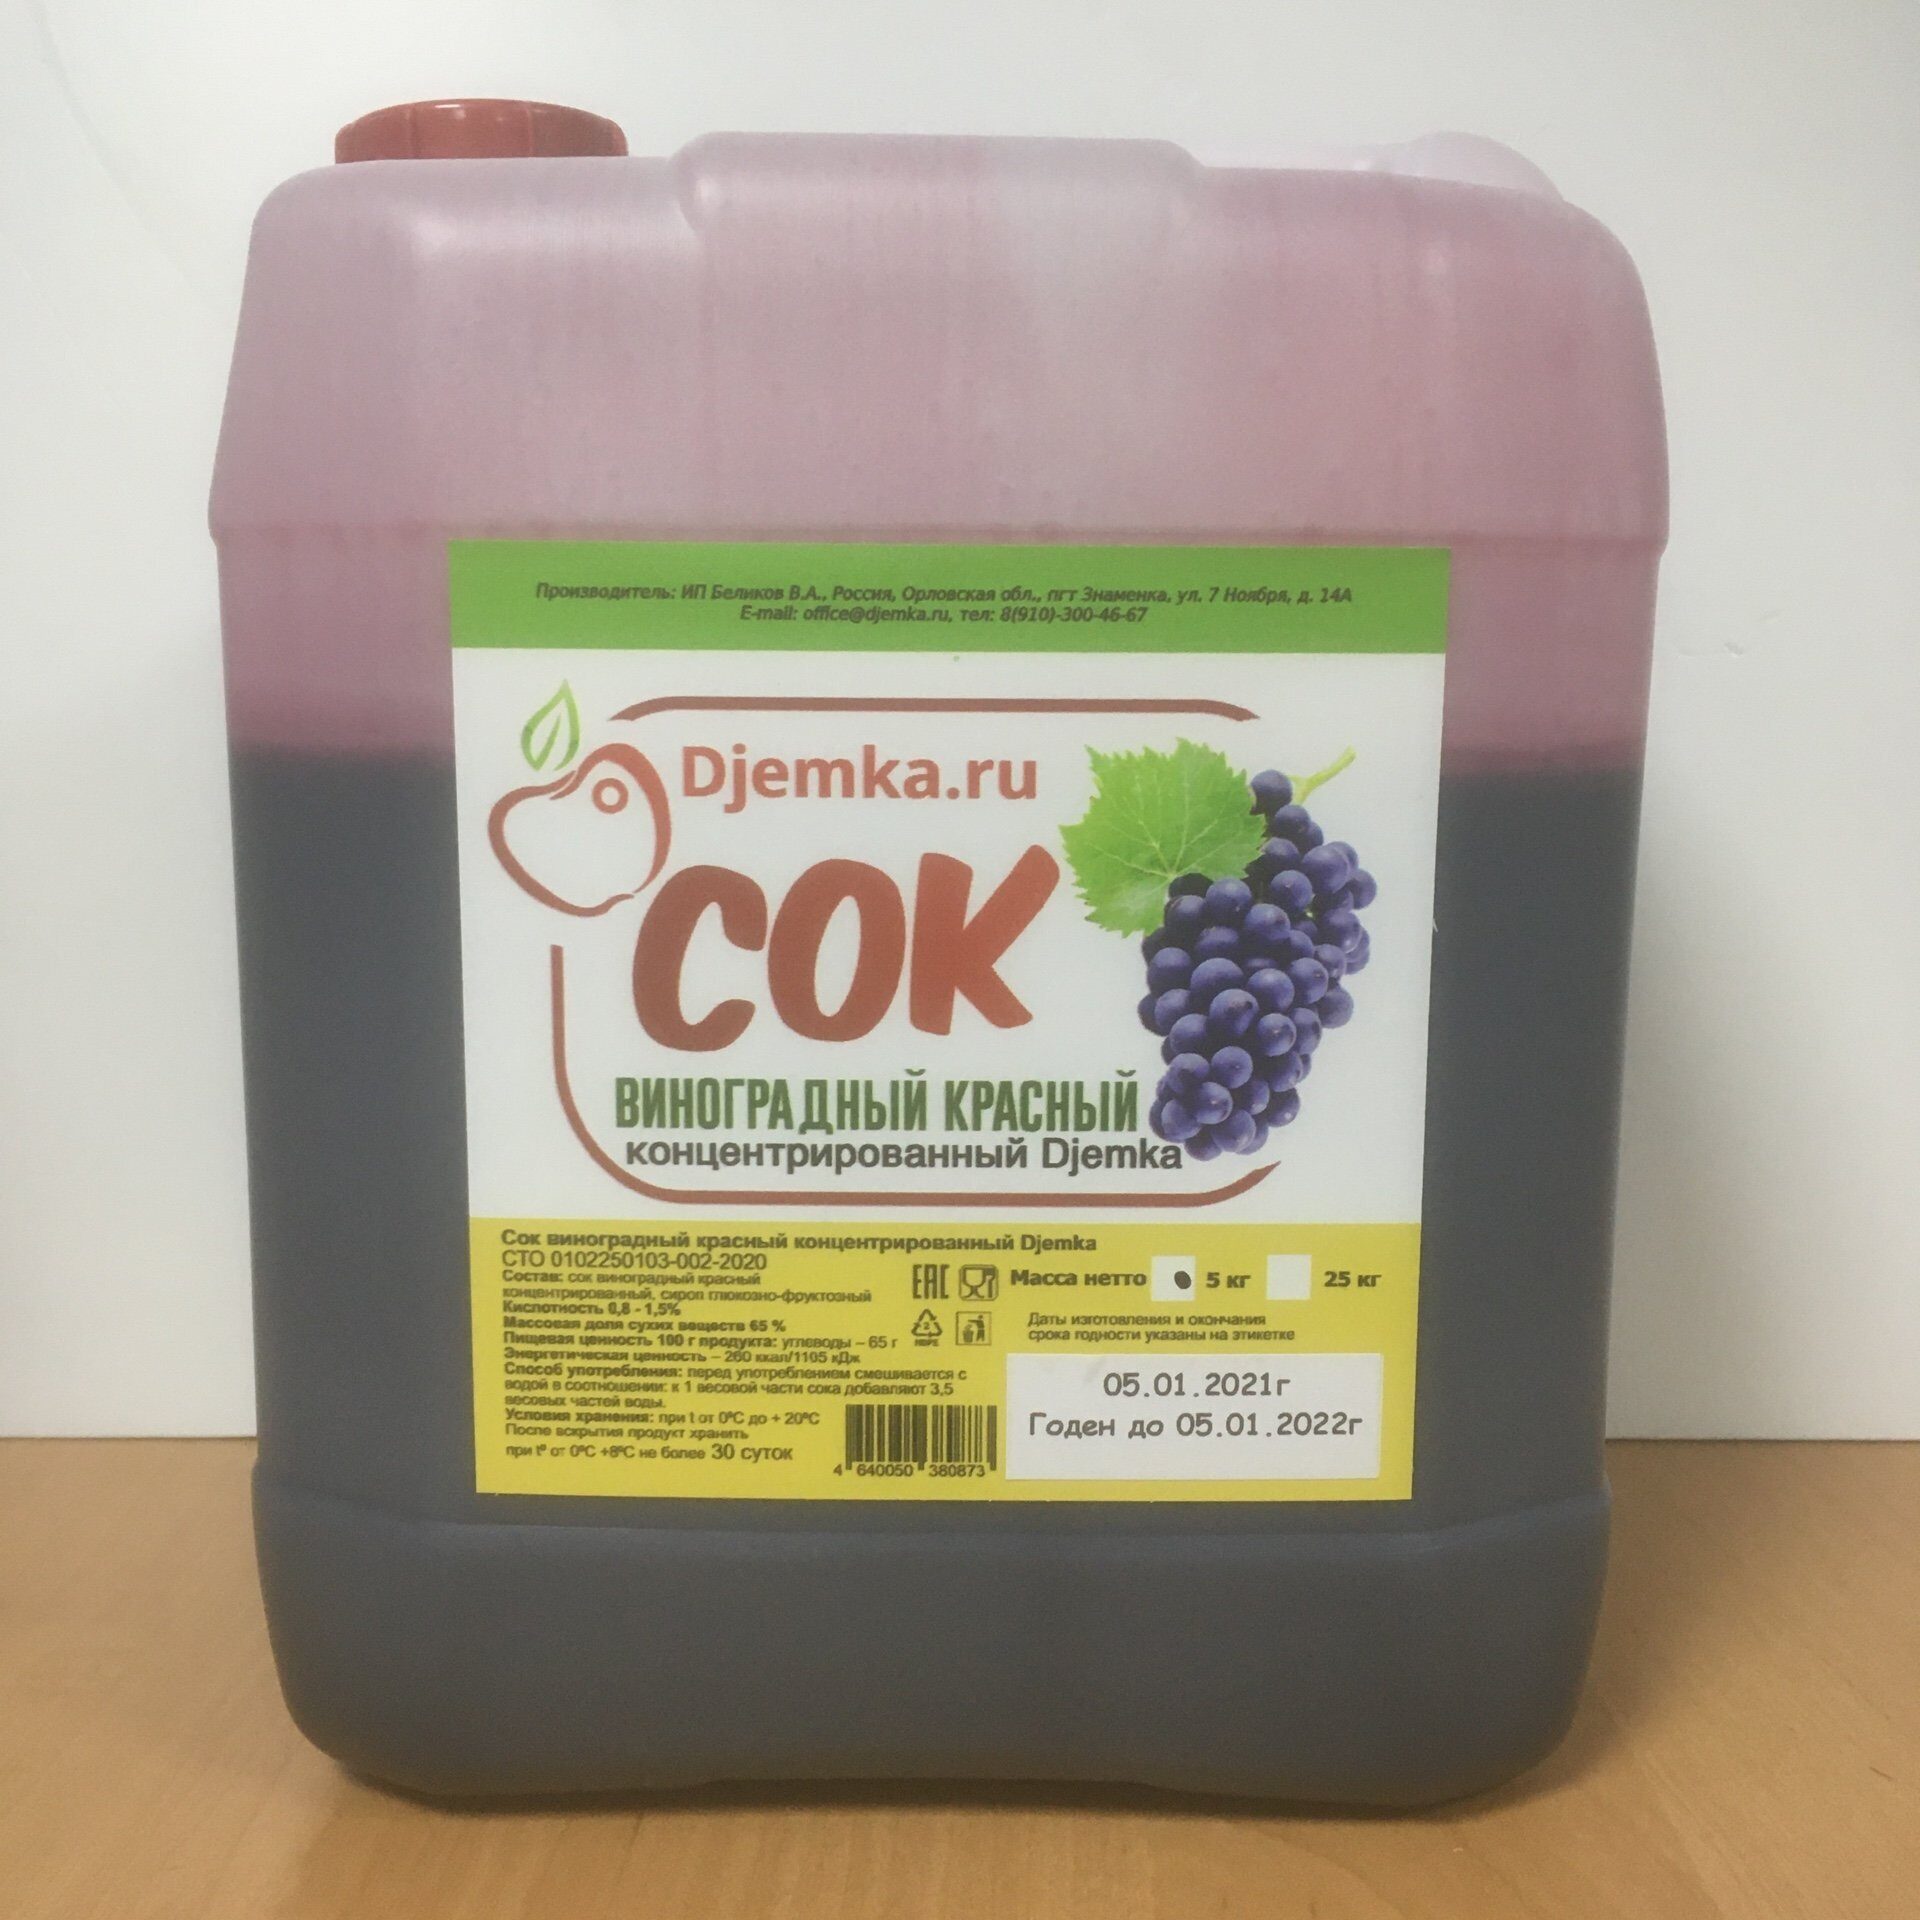 Сок виноградный концентрированный рецепт. Концентрат djemka виноградный красный. Концентрированный виноградный сок. Концентрат сока. Концентрат сока винограда.